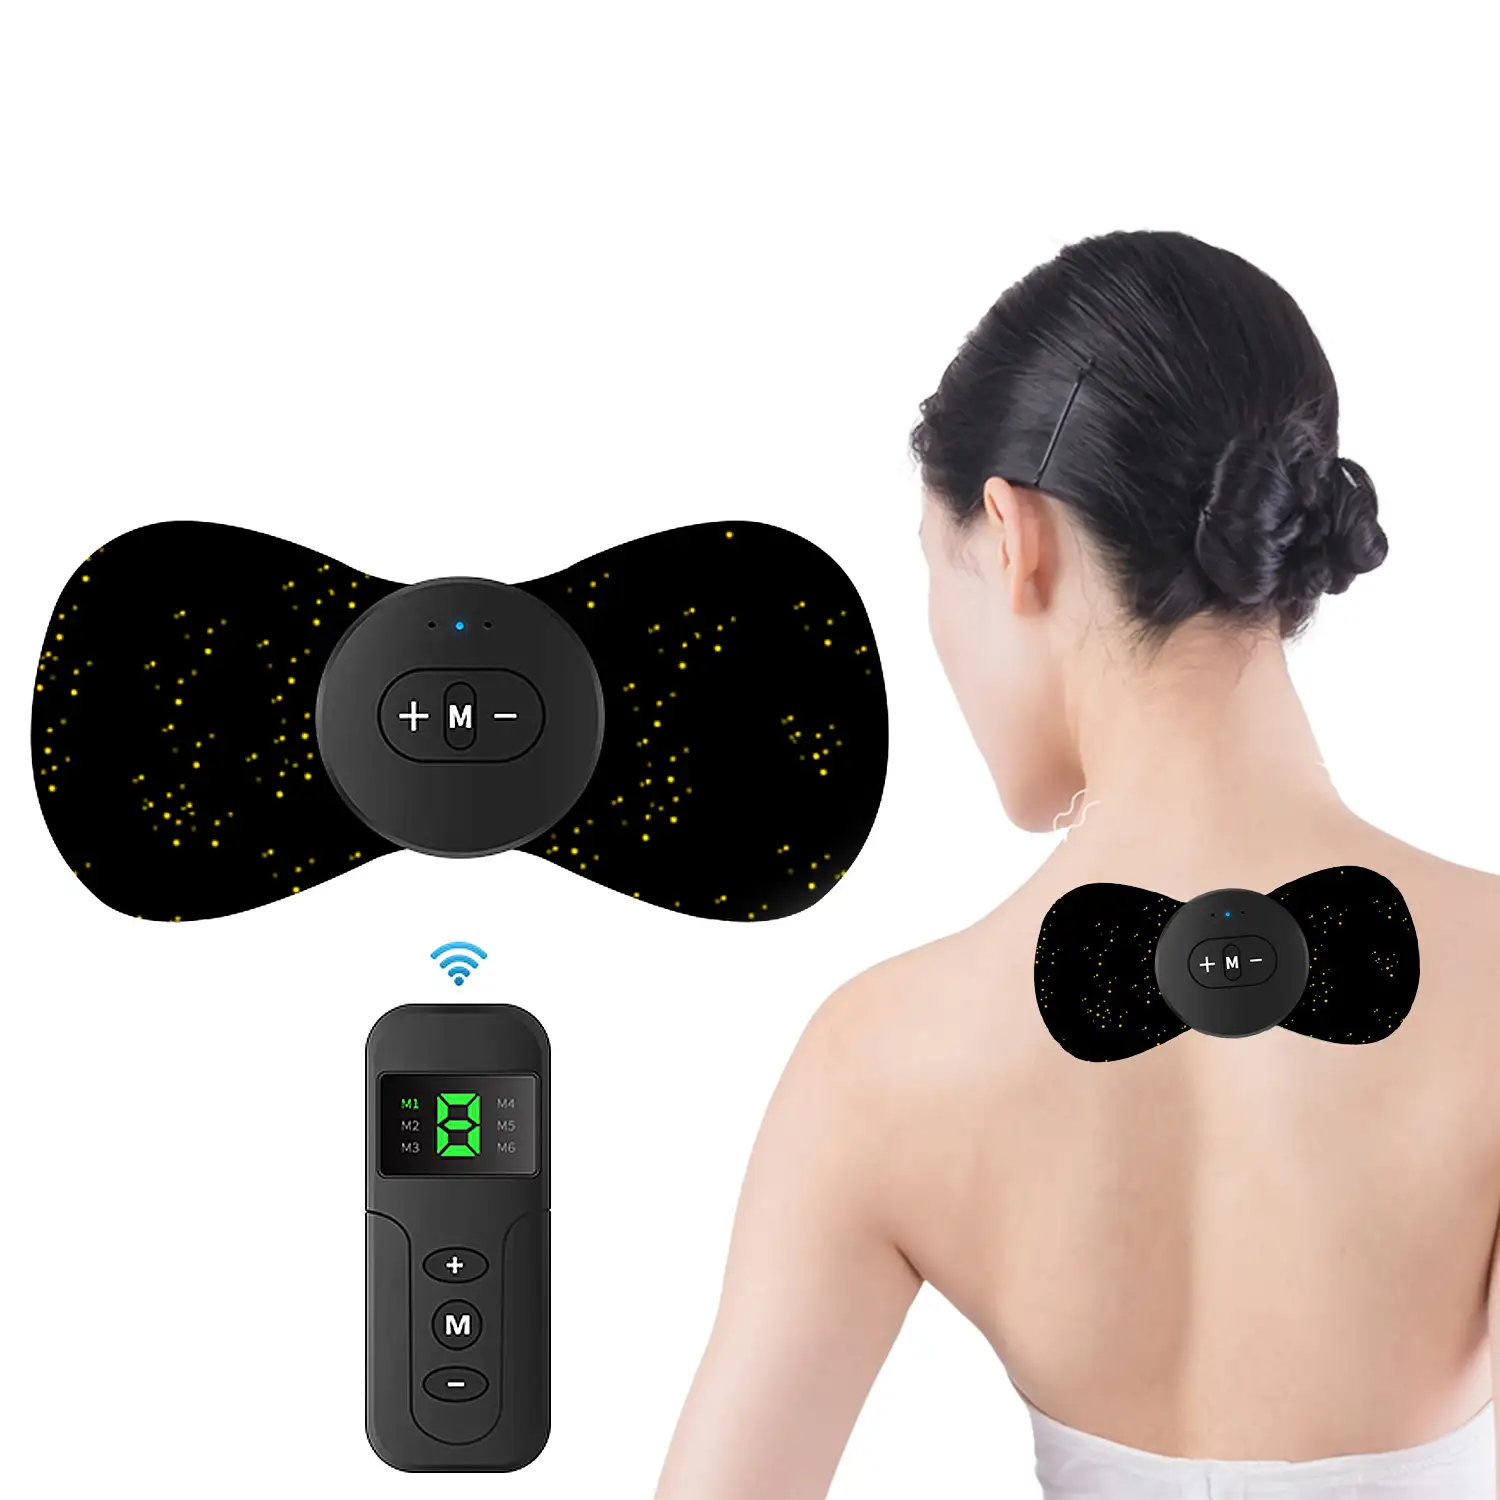 Estimulador electrónico EMS ZG3Q con mando a distancia. Especial para cuello y espalda. Ayuda a aliviar el dolor muscular y la fatiga. Batería recargable.